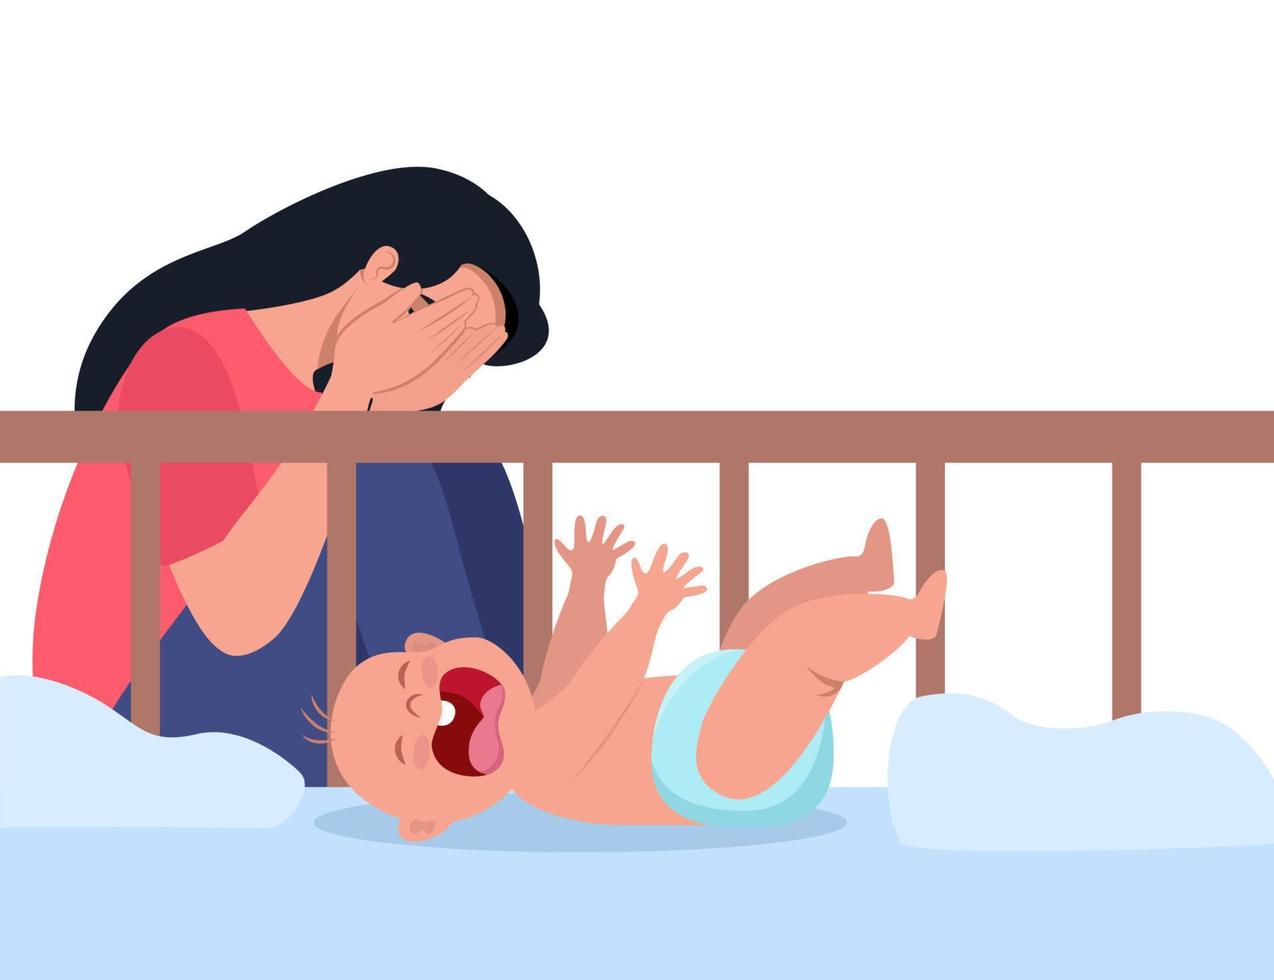 vrouw in postpartum depressie, uitgeput en benadrukt. ongelukkig mam De volgende naar de pasgeborenen wieg. een klein kind is huilen hysterisch en trekken omhoog de handvatten. vector illustratie.